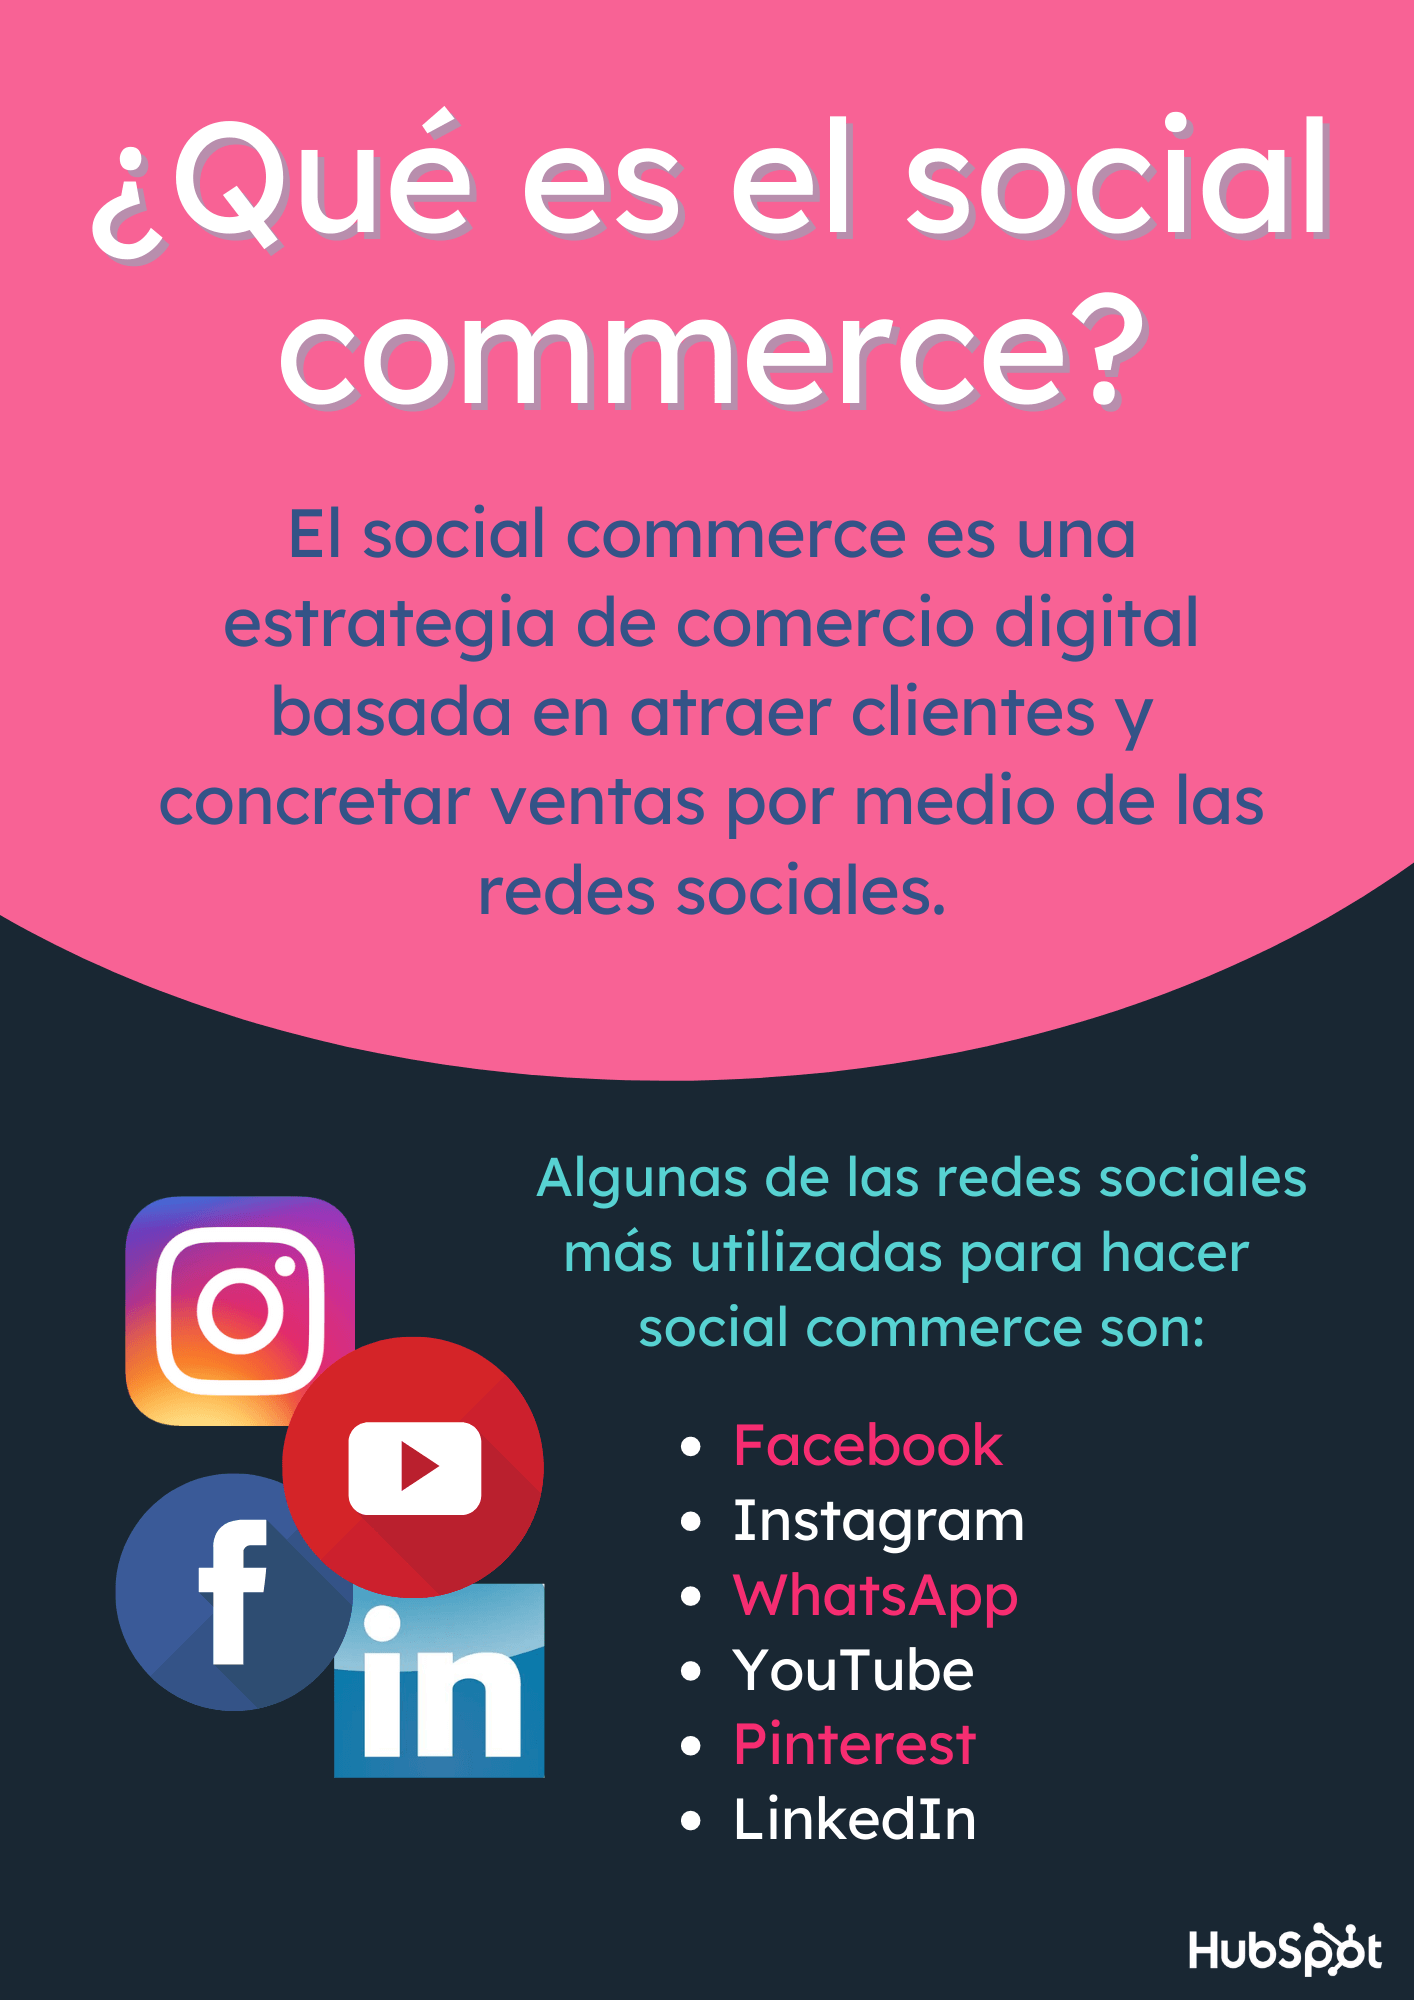 ¿Qué es el social commerce?